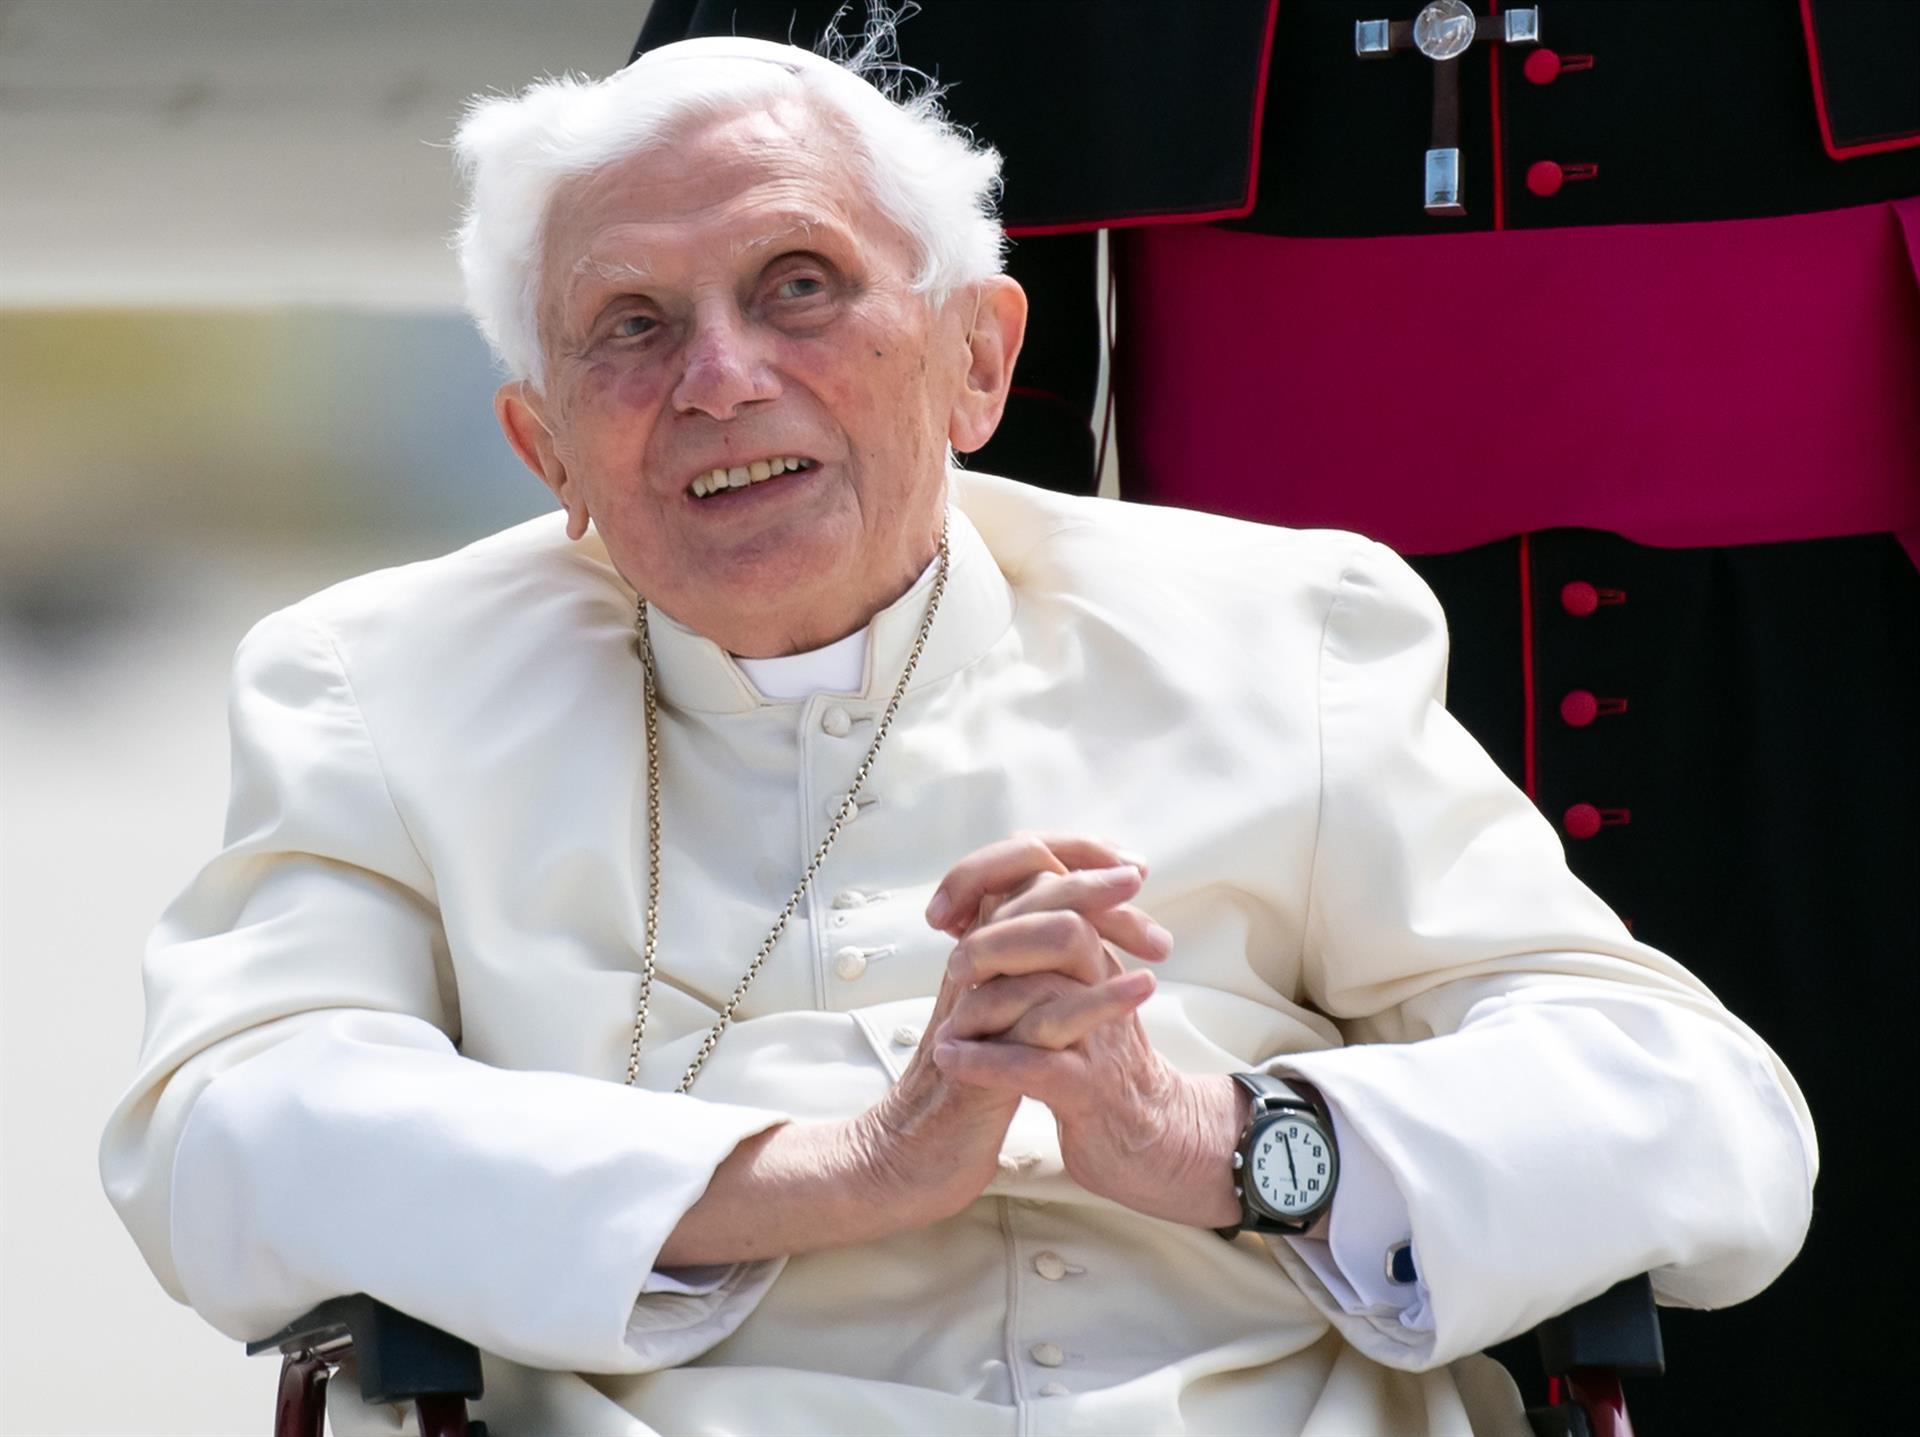 renunció el papa Benedicto XVI en 2013